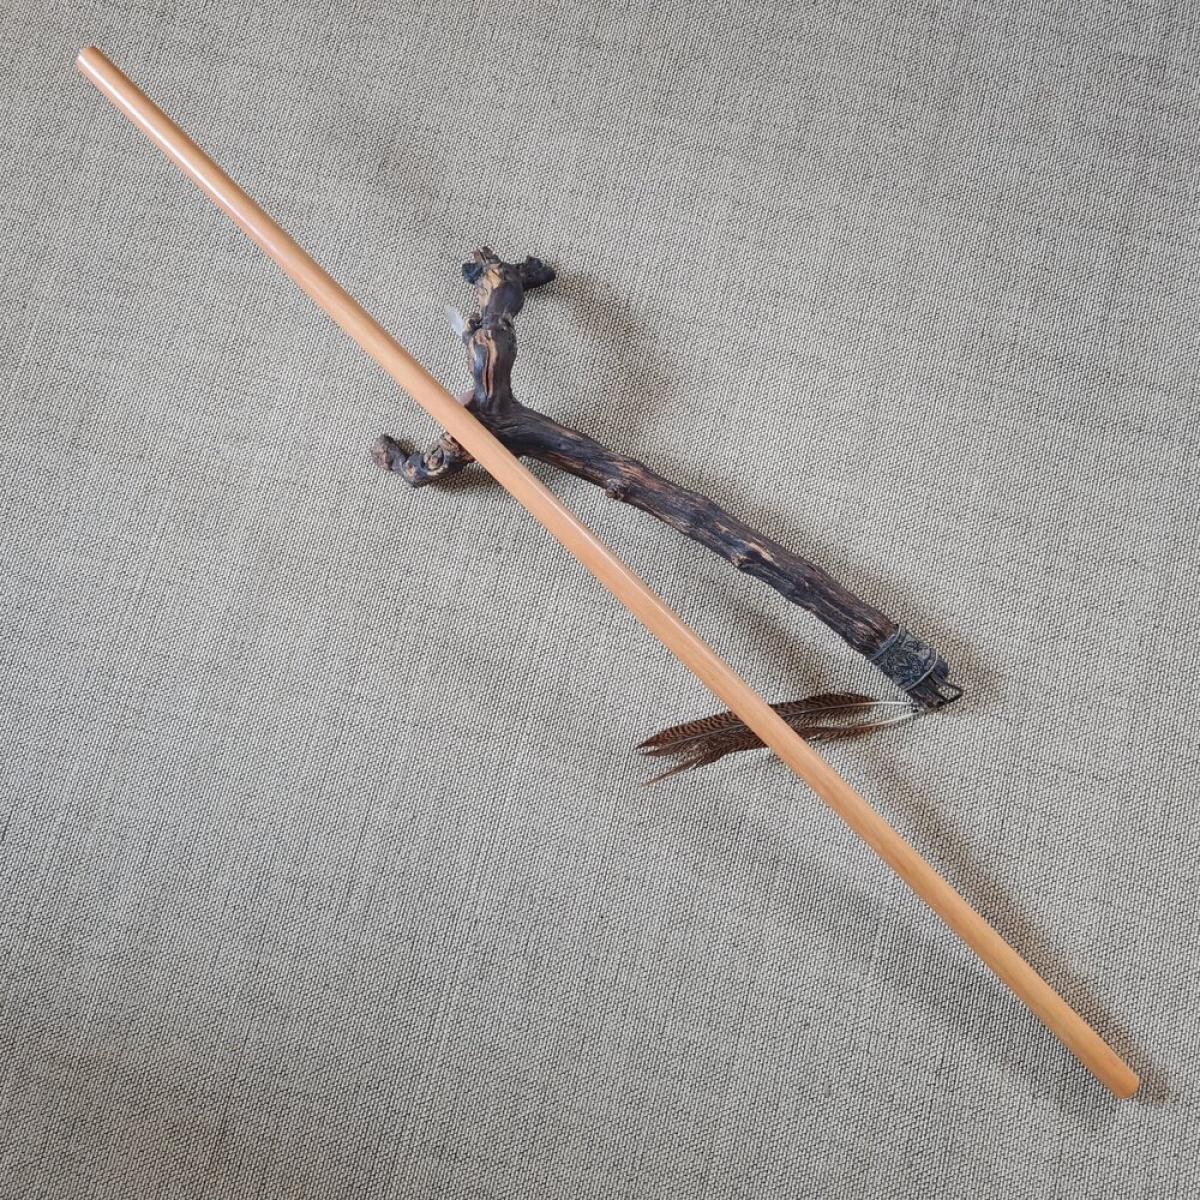 Jo-Stick made of Betis wood - length 135 cm ➤ www.bokken-shop.de. Suitable for Aikido, Iaido, Jo-Jutsu, Jodo, Bujinkan. Your Budo dealer!